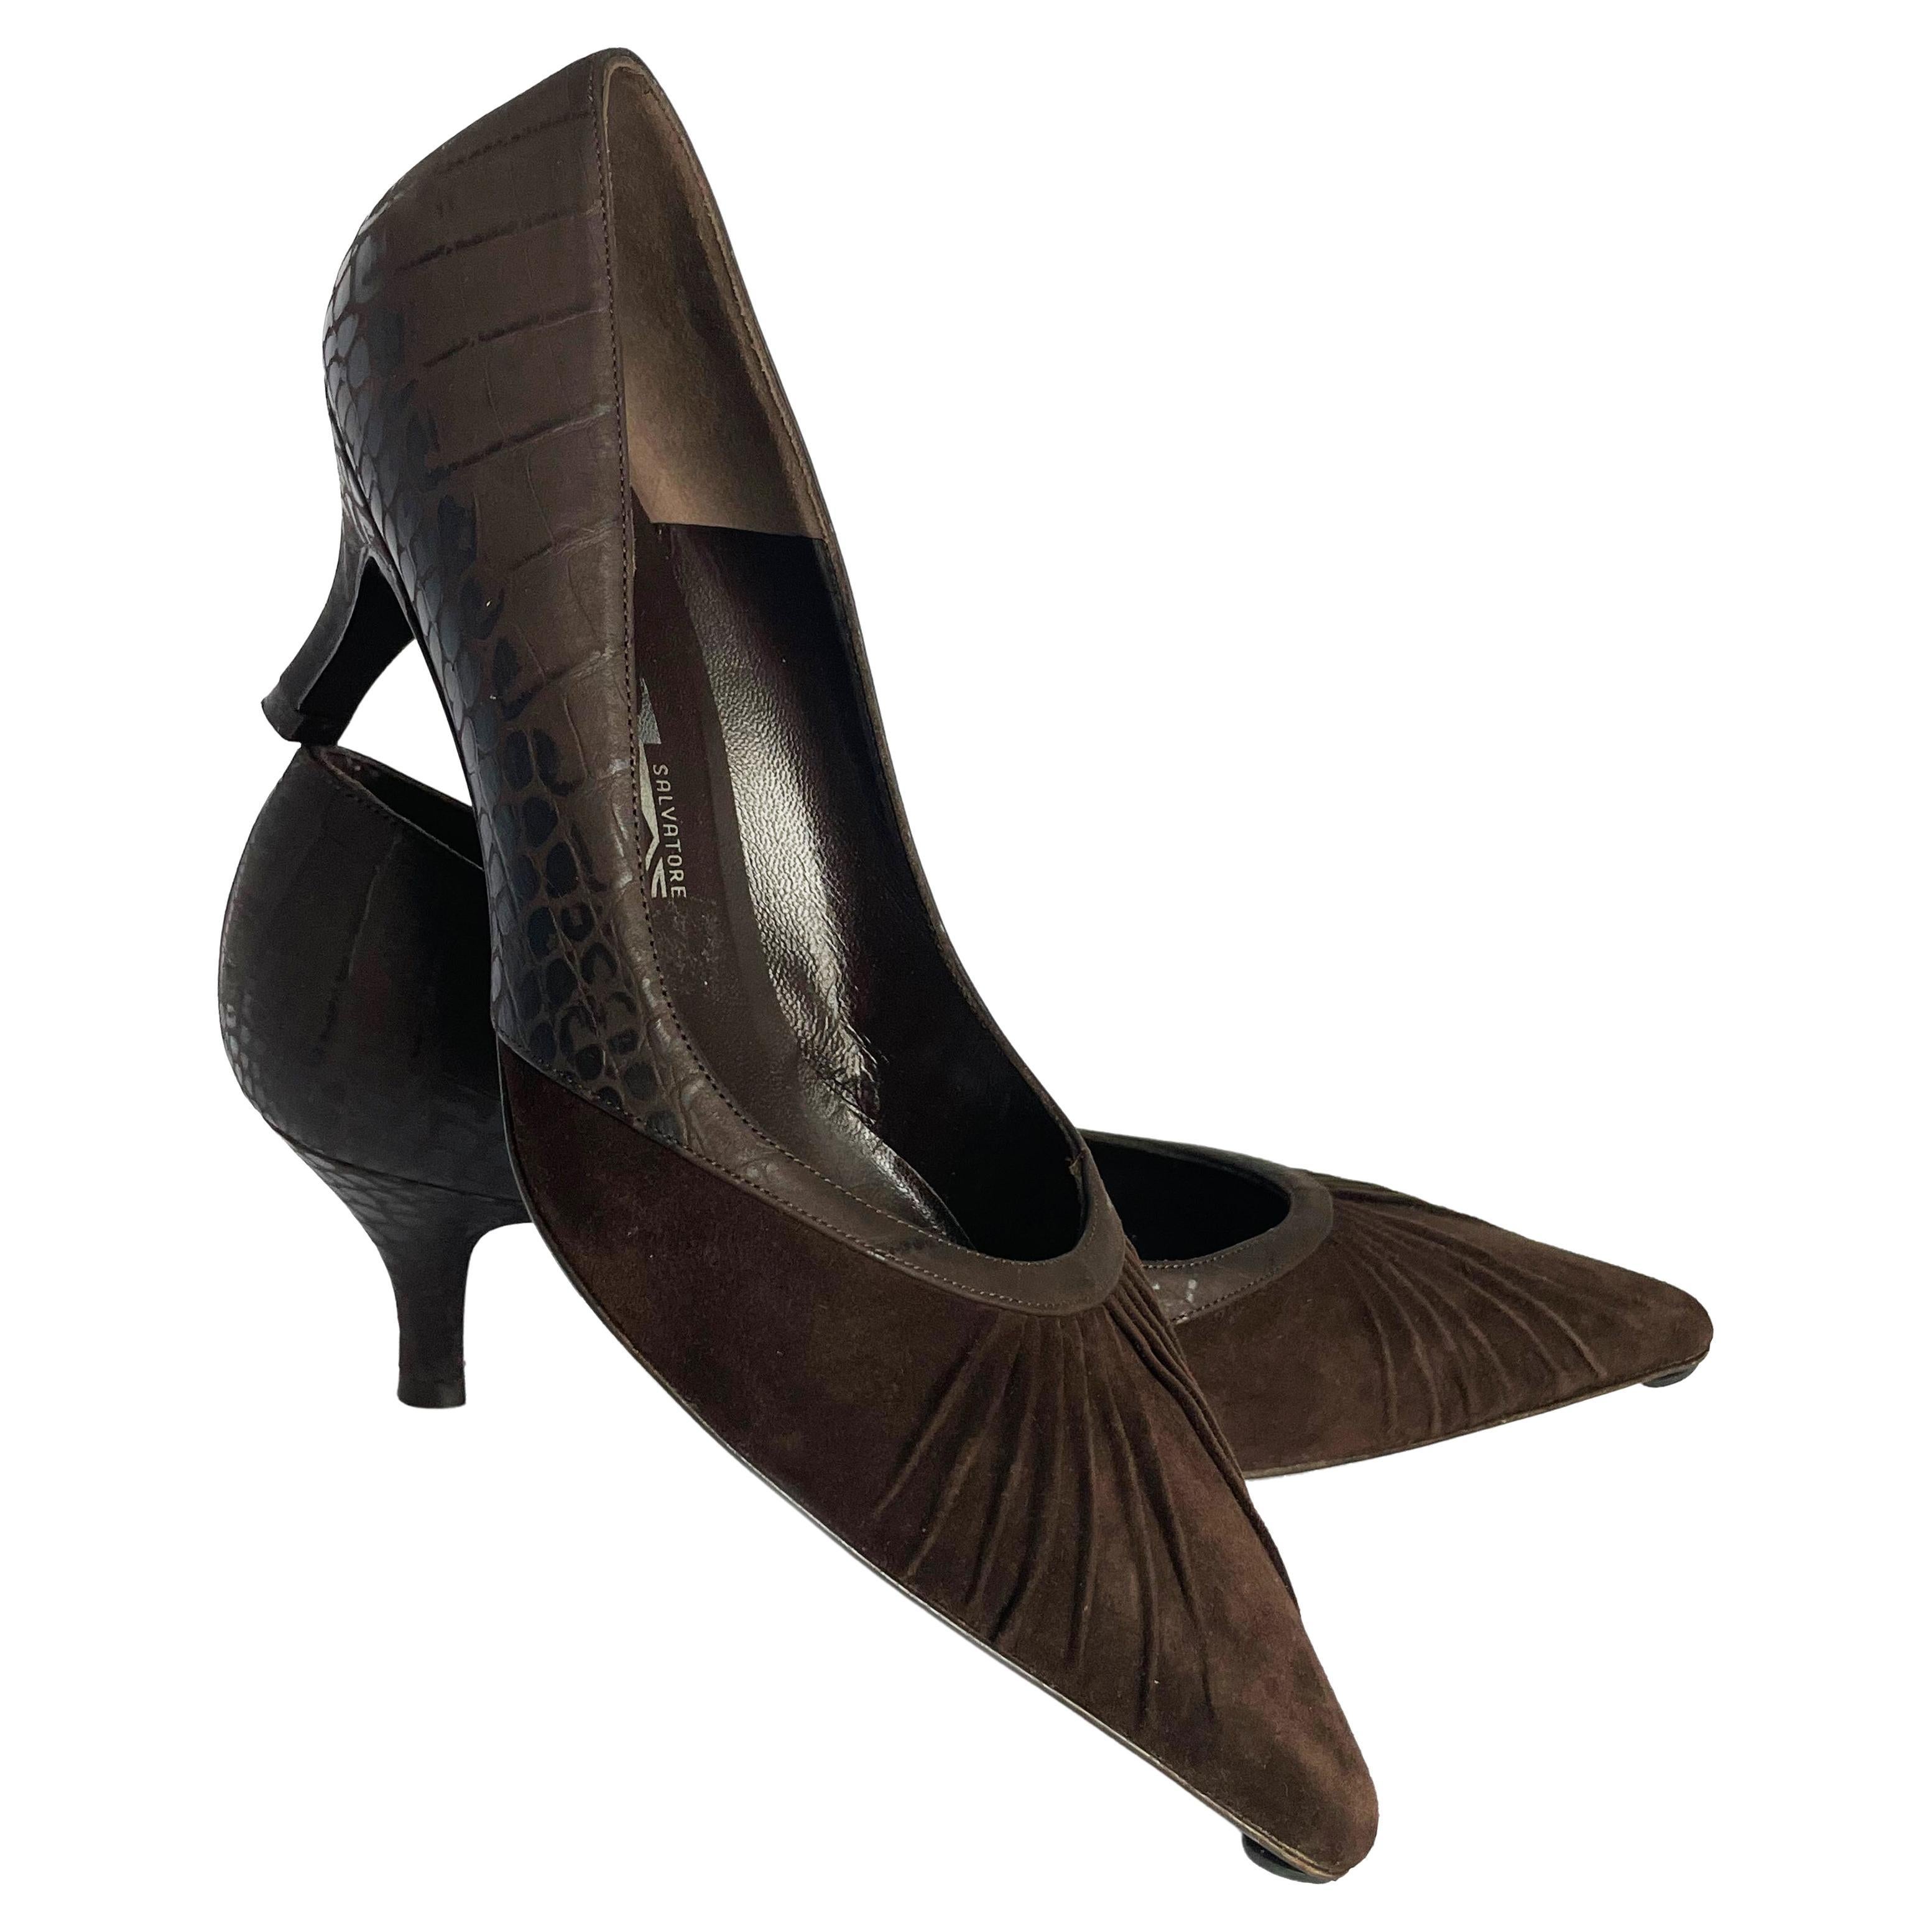 smart shoe pumps 80s 70s art deco low heel Vintage brown Italian leather kitten heels with decorative buckle suede bow